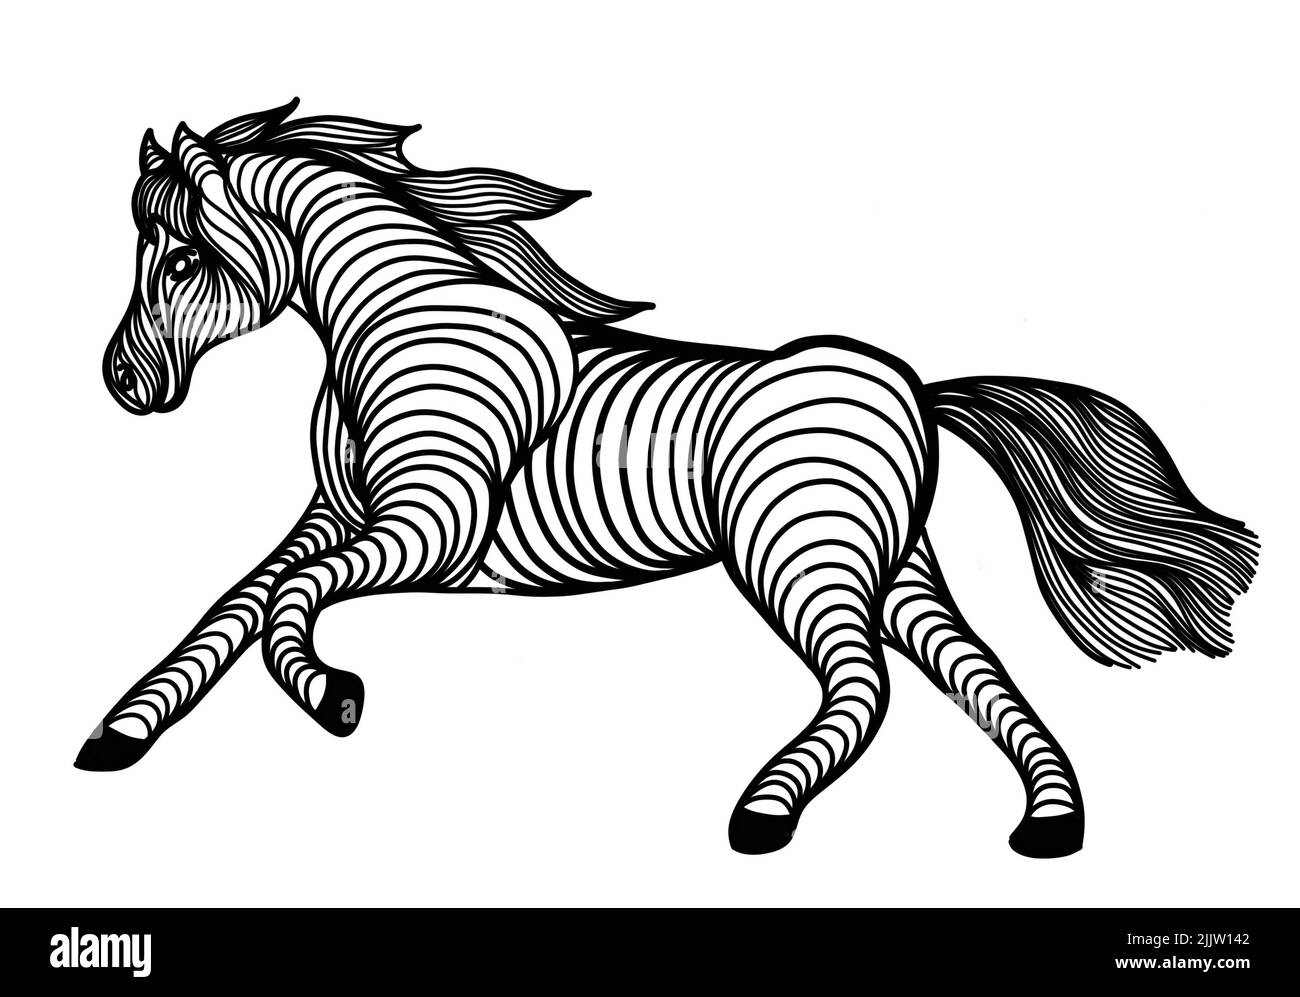 Eine einzigartige schwarz-weiße Linienkunst digitale Zeichnung eines Pferdes für Hintergrund, Logo und andere Illustrationen braucht Stockfoto